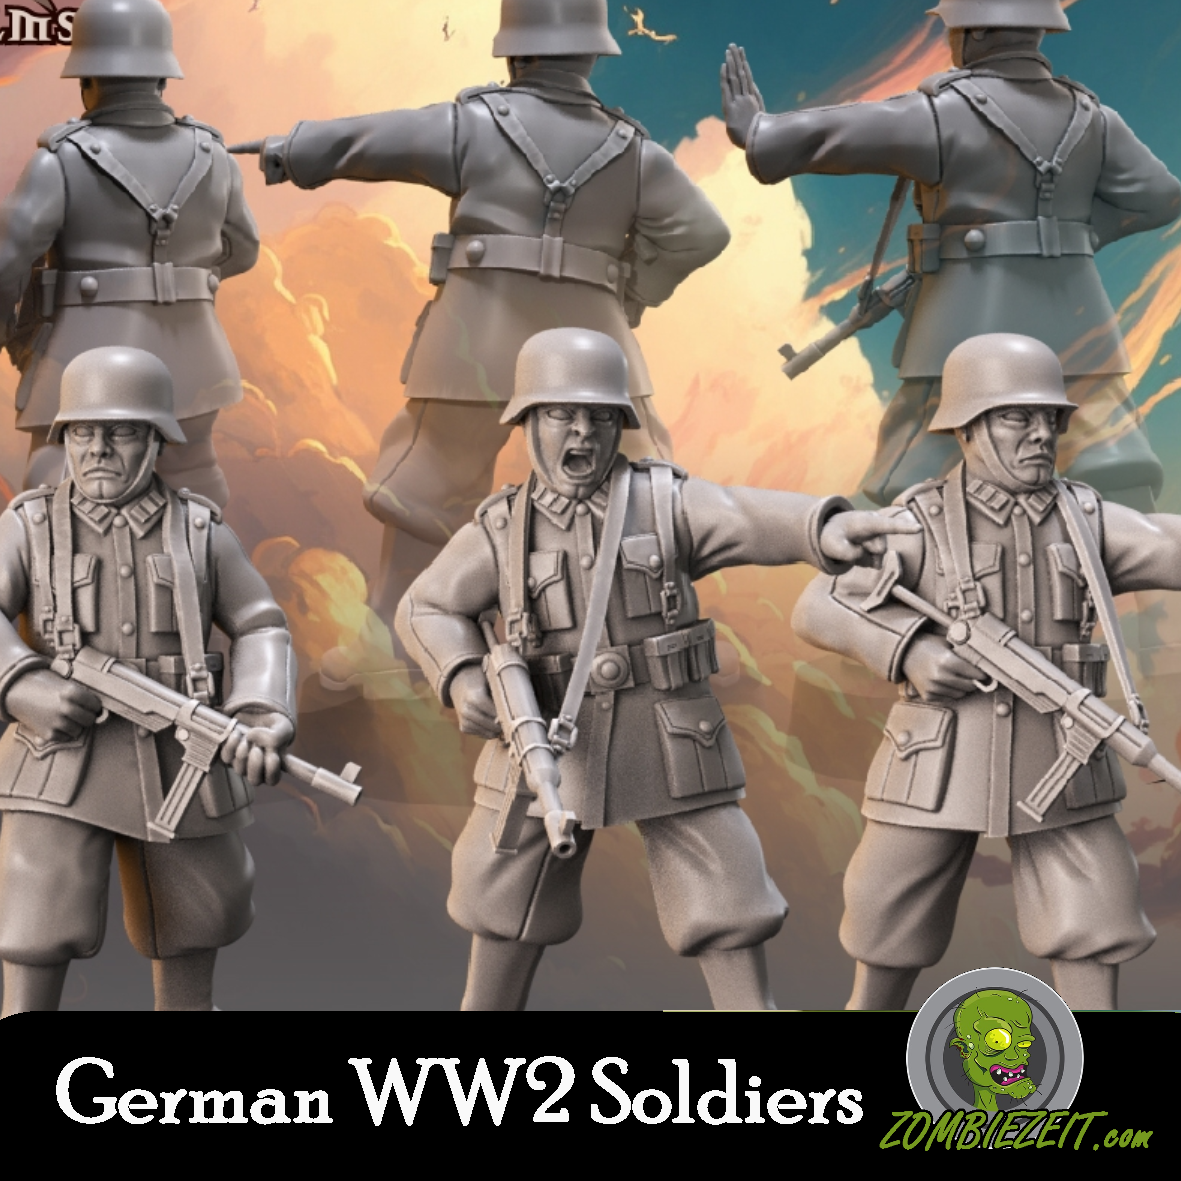 German WW2 Soldiers